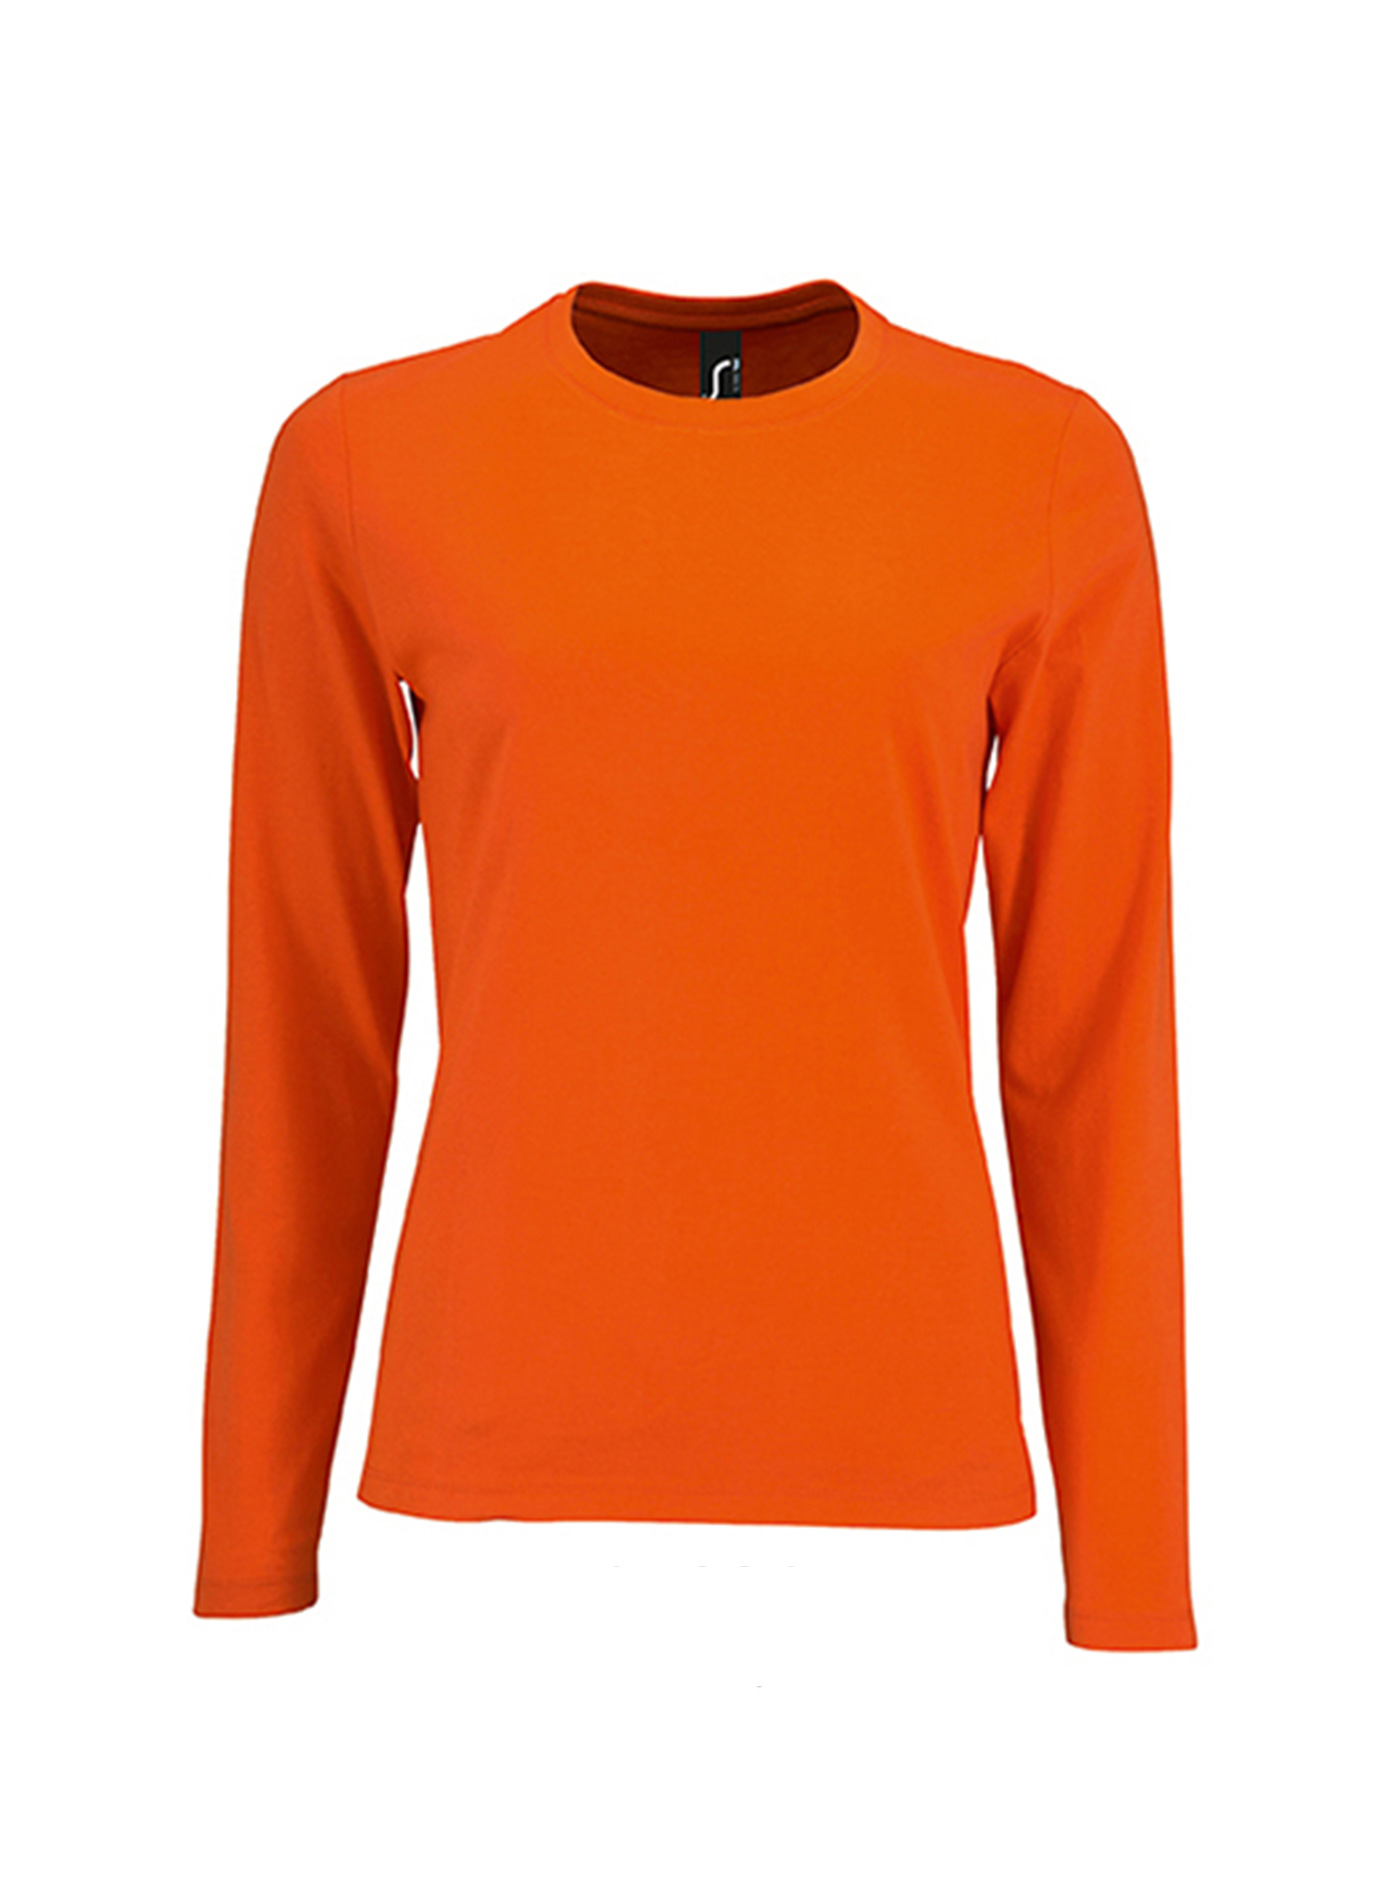 Dámské tričko s dlouhým rukávem SOL´S Imperial - Zářivá oranžová XL